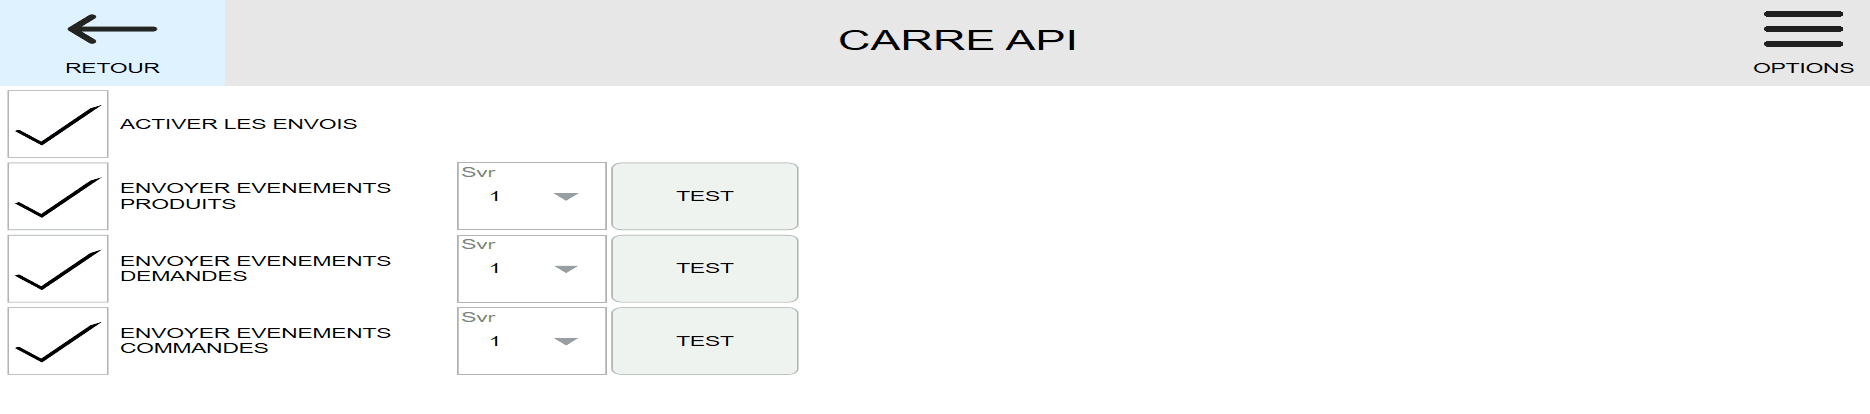 Envoyer les commandes - Carré API